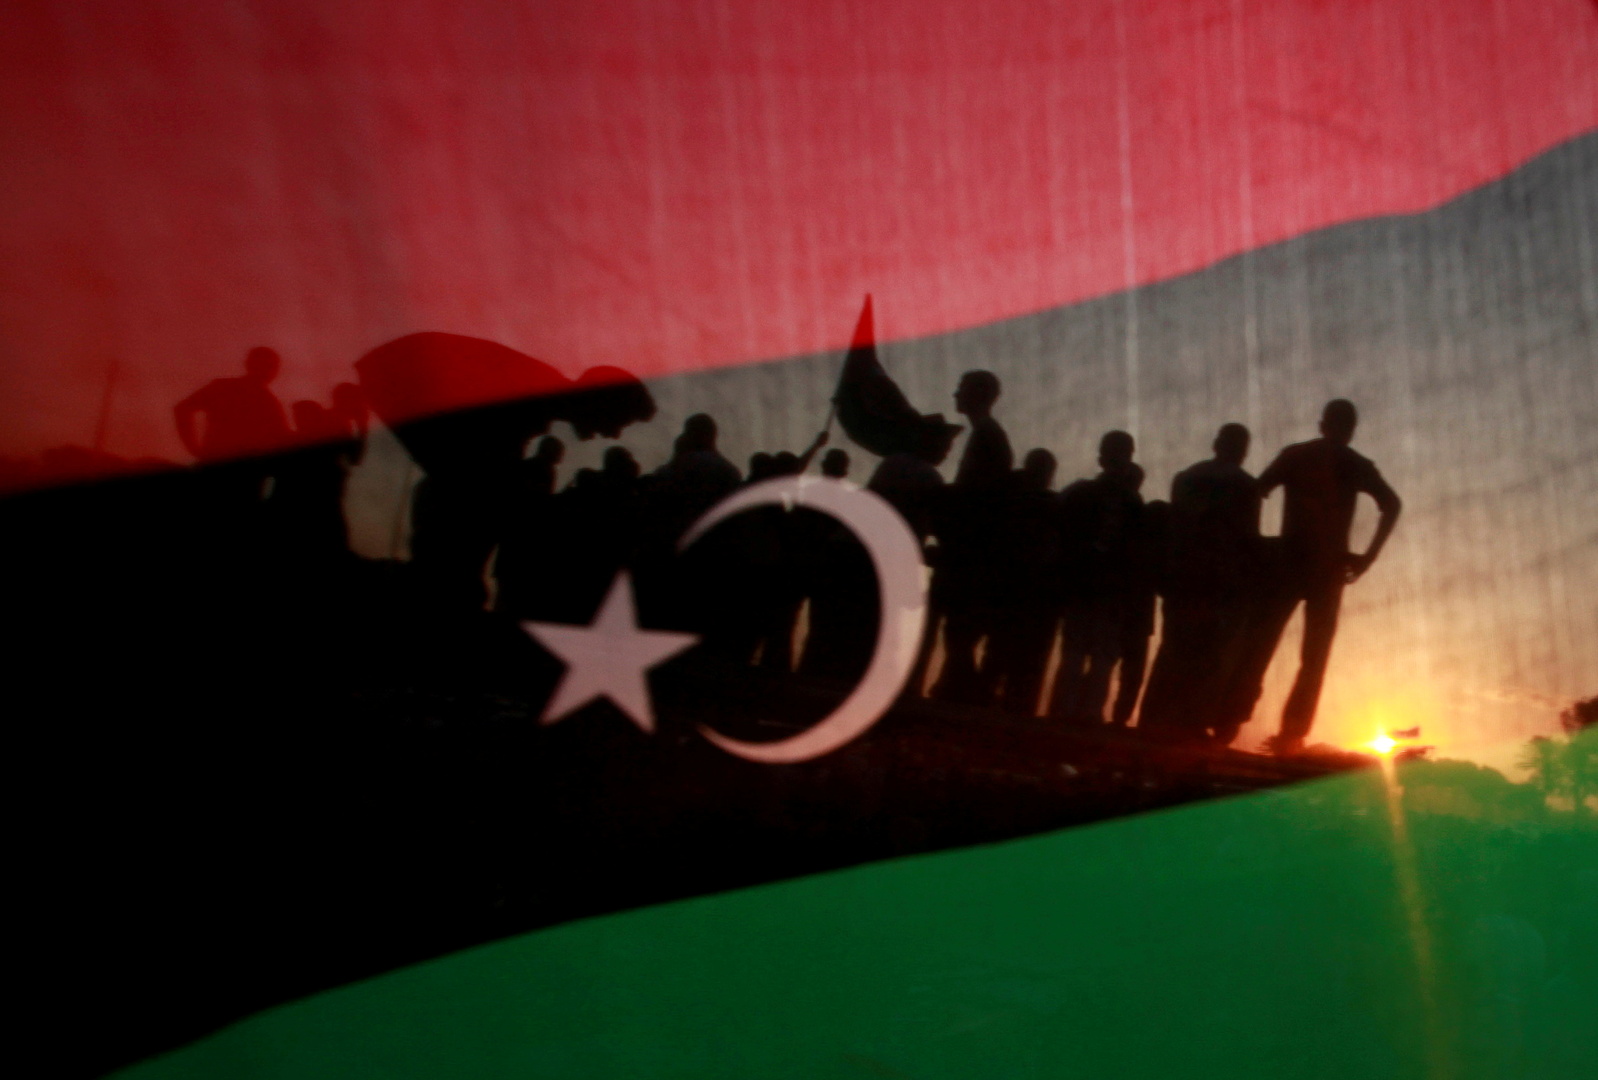 اللجنة الوطنية لحقوق الإنسان بليبيا تدعو للإسراع بتنفيذ بنود وقف إطلاق النار وأولها إخراج المرتزقة